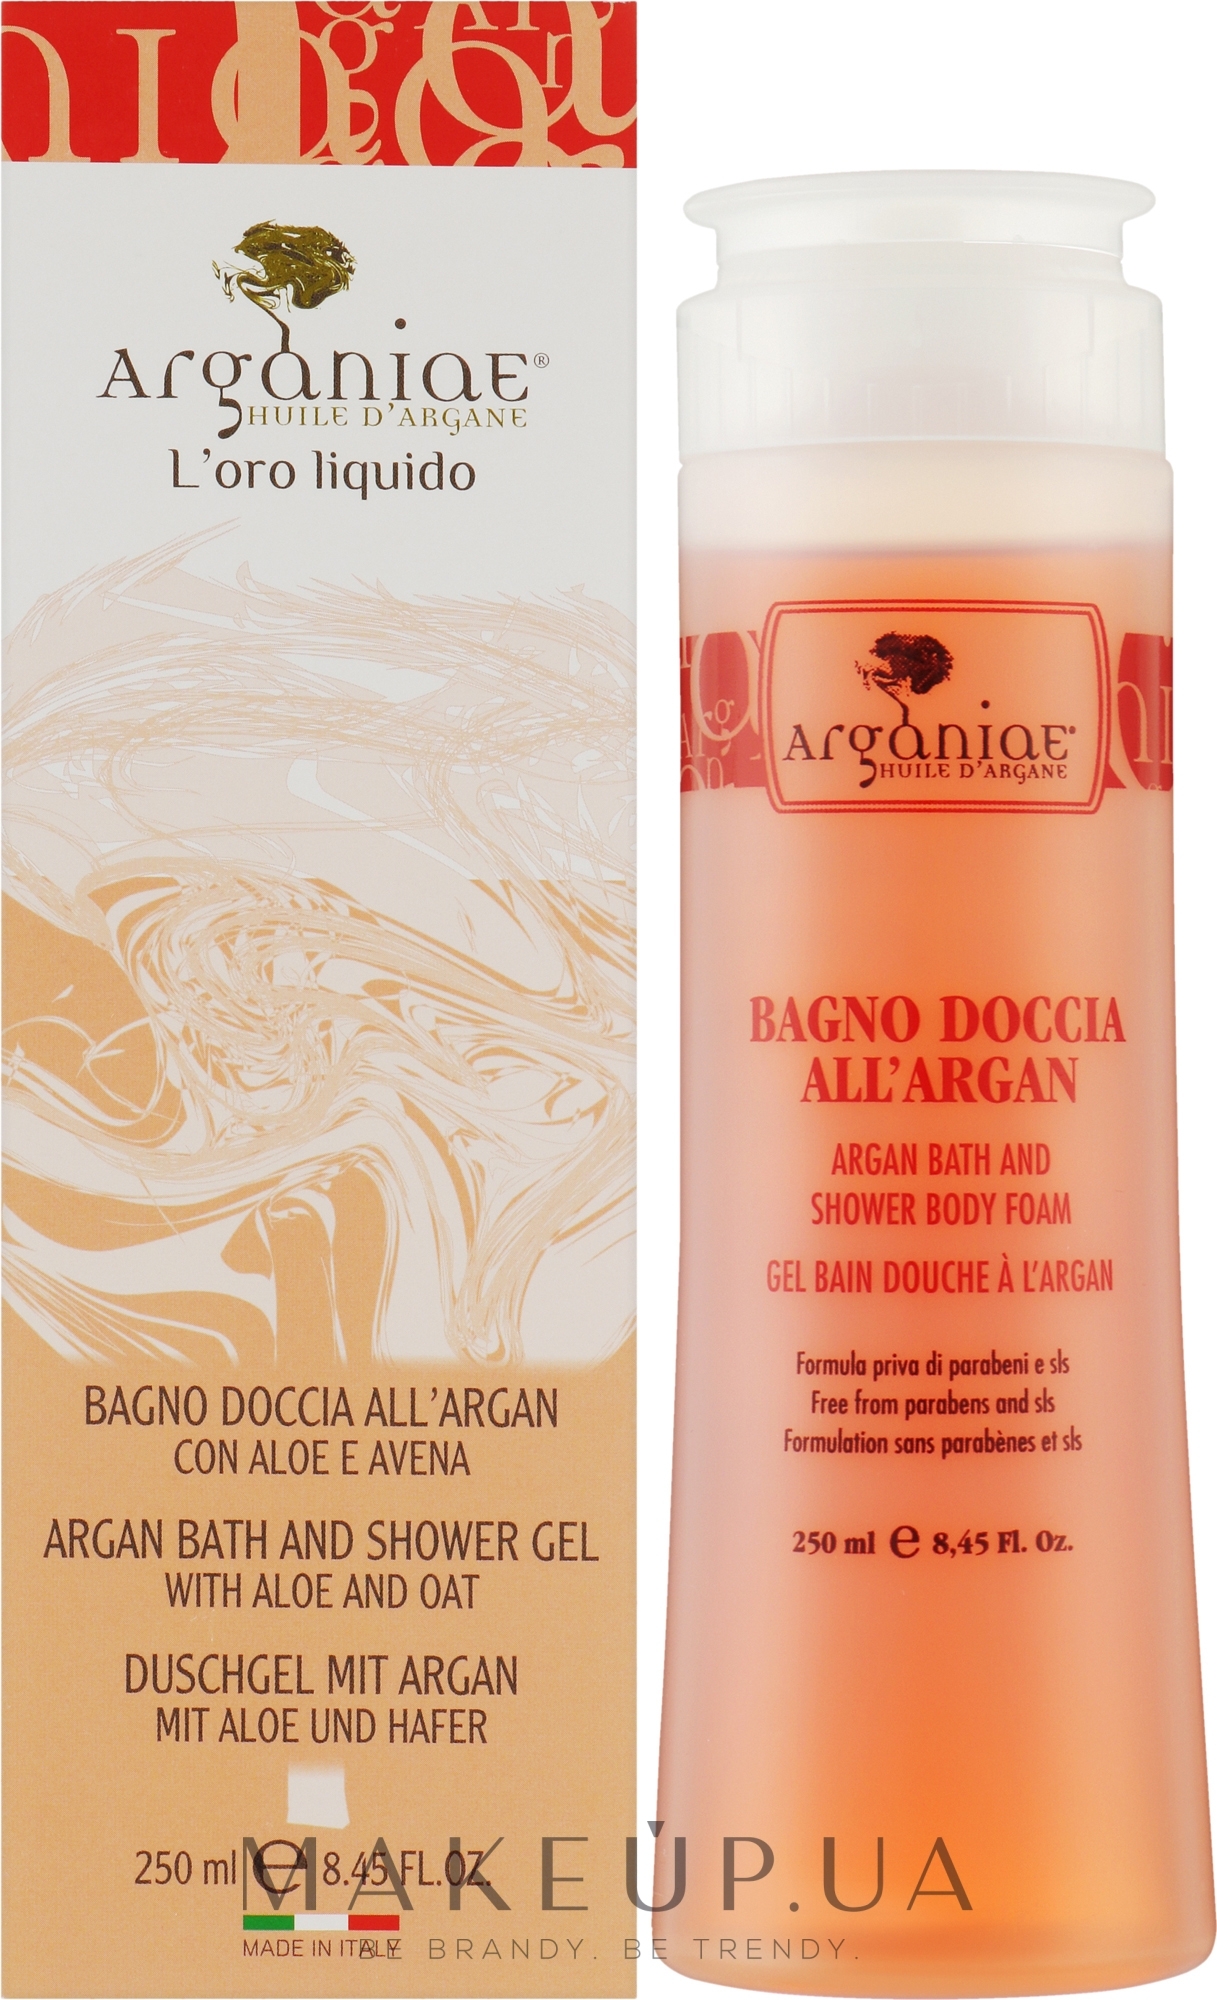 Гель для ванны и душа с аргановым маслом алоэ и овсом - Arganiae L'oro Liquido Argan Oil Bath And Shower Body Foam — фото 250ml